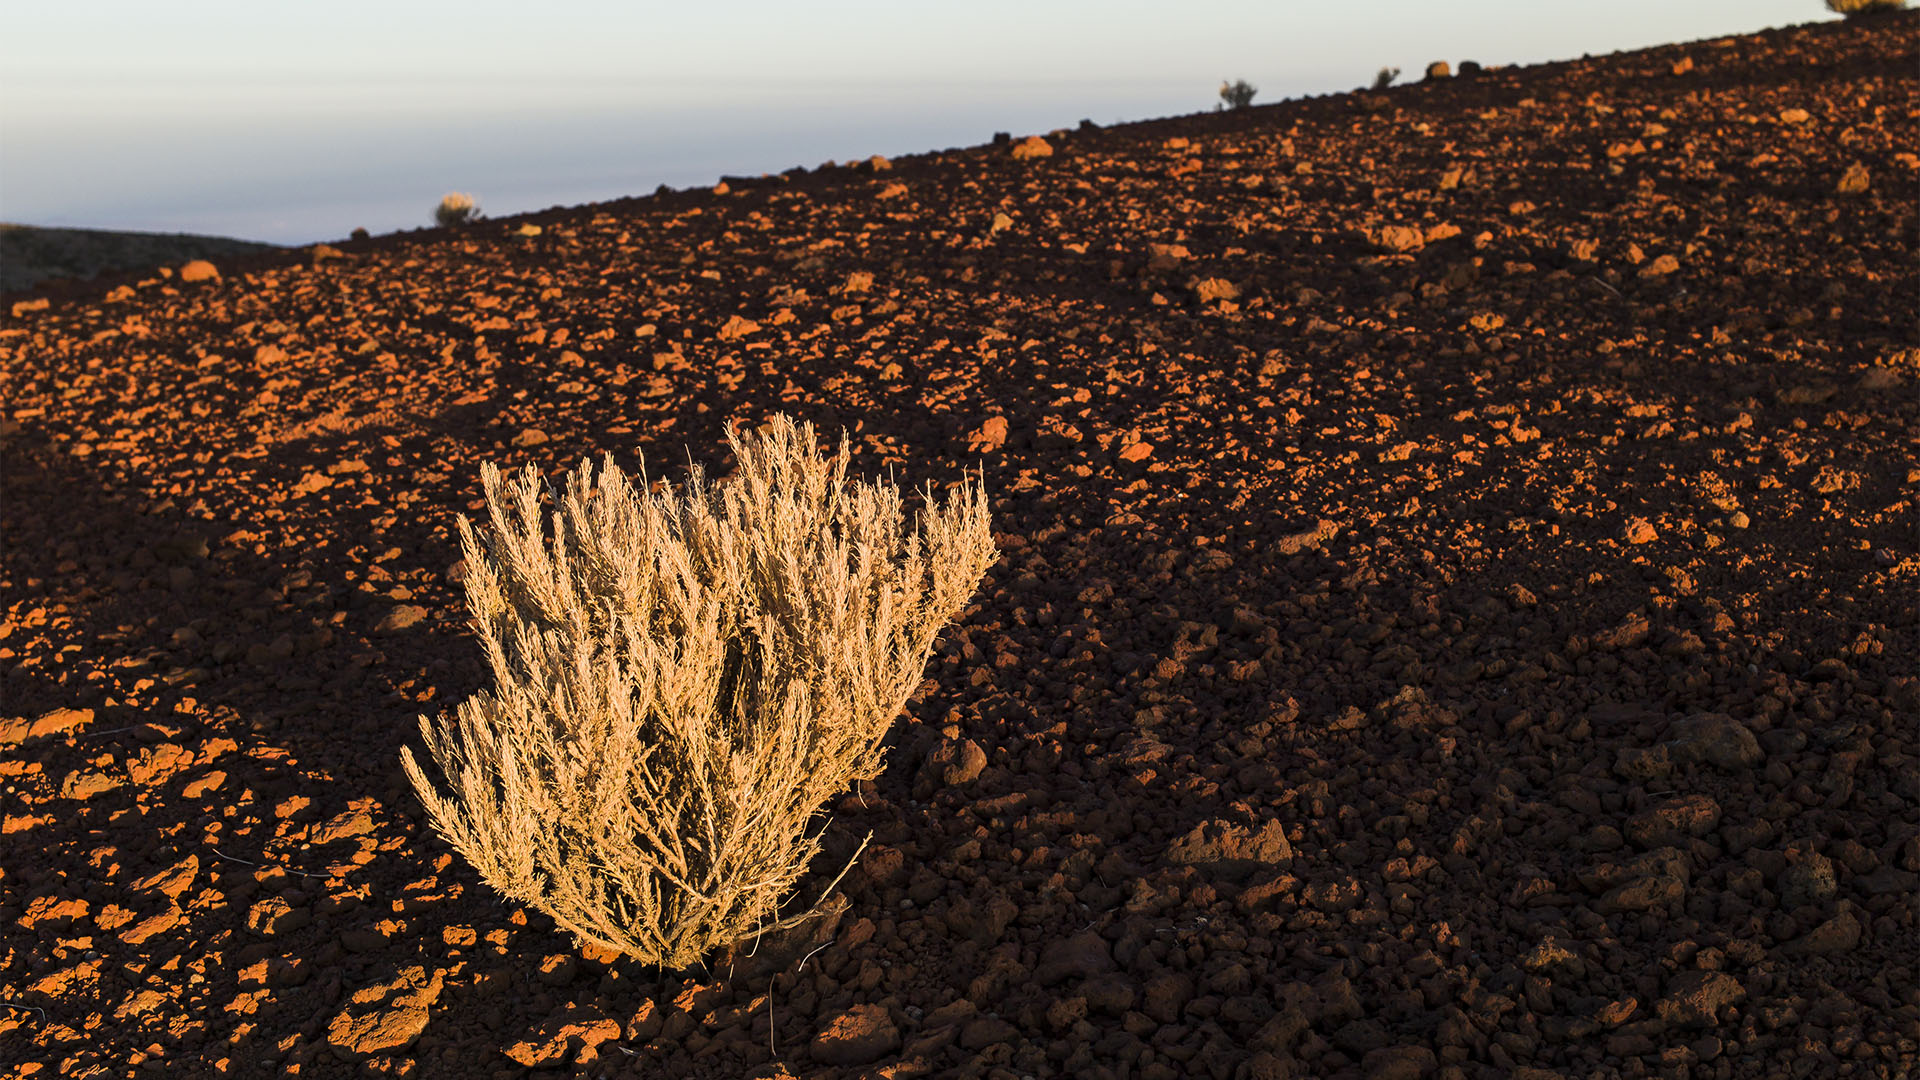 Bizarre Pflanzenformationen auf der in der Abendsonne leutenden Lava.